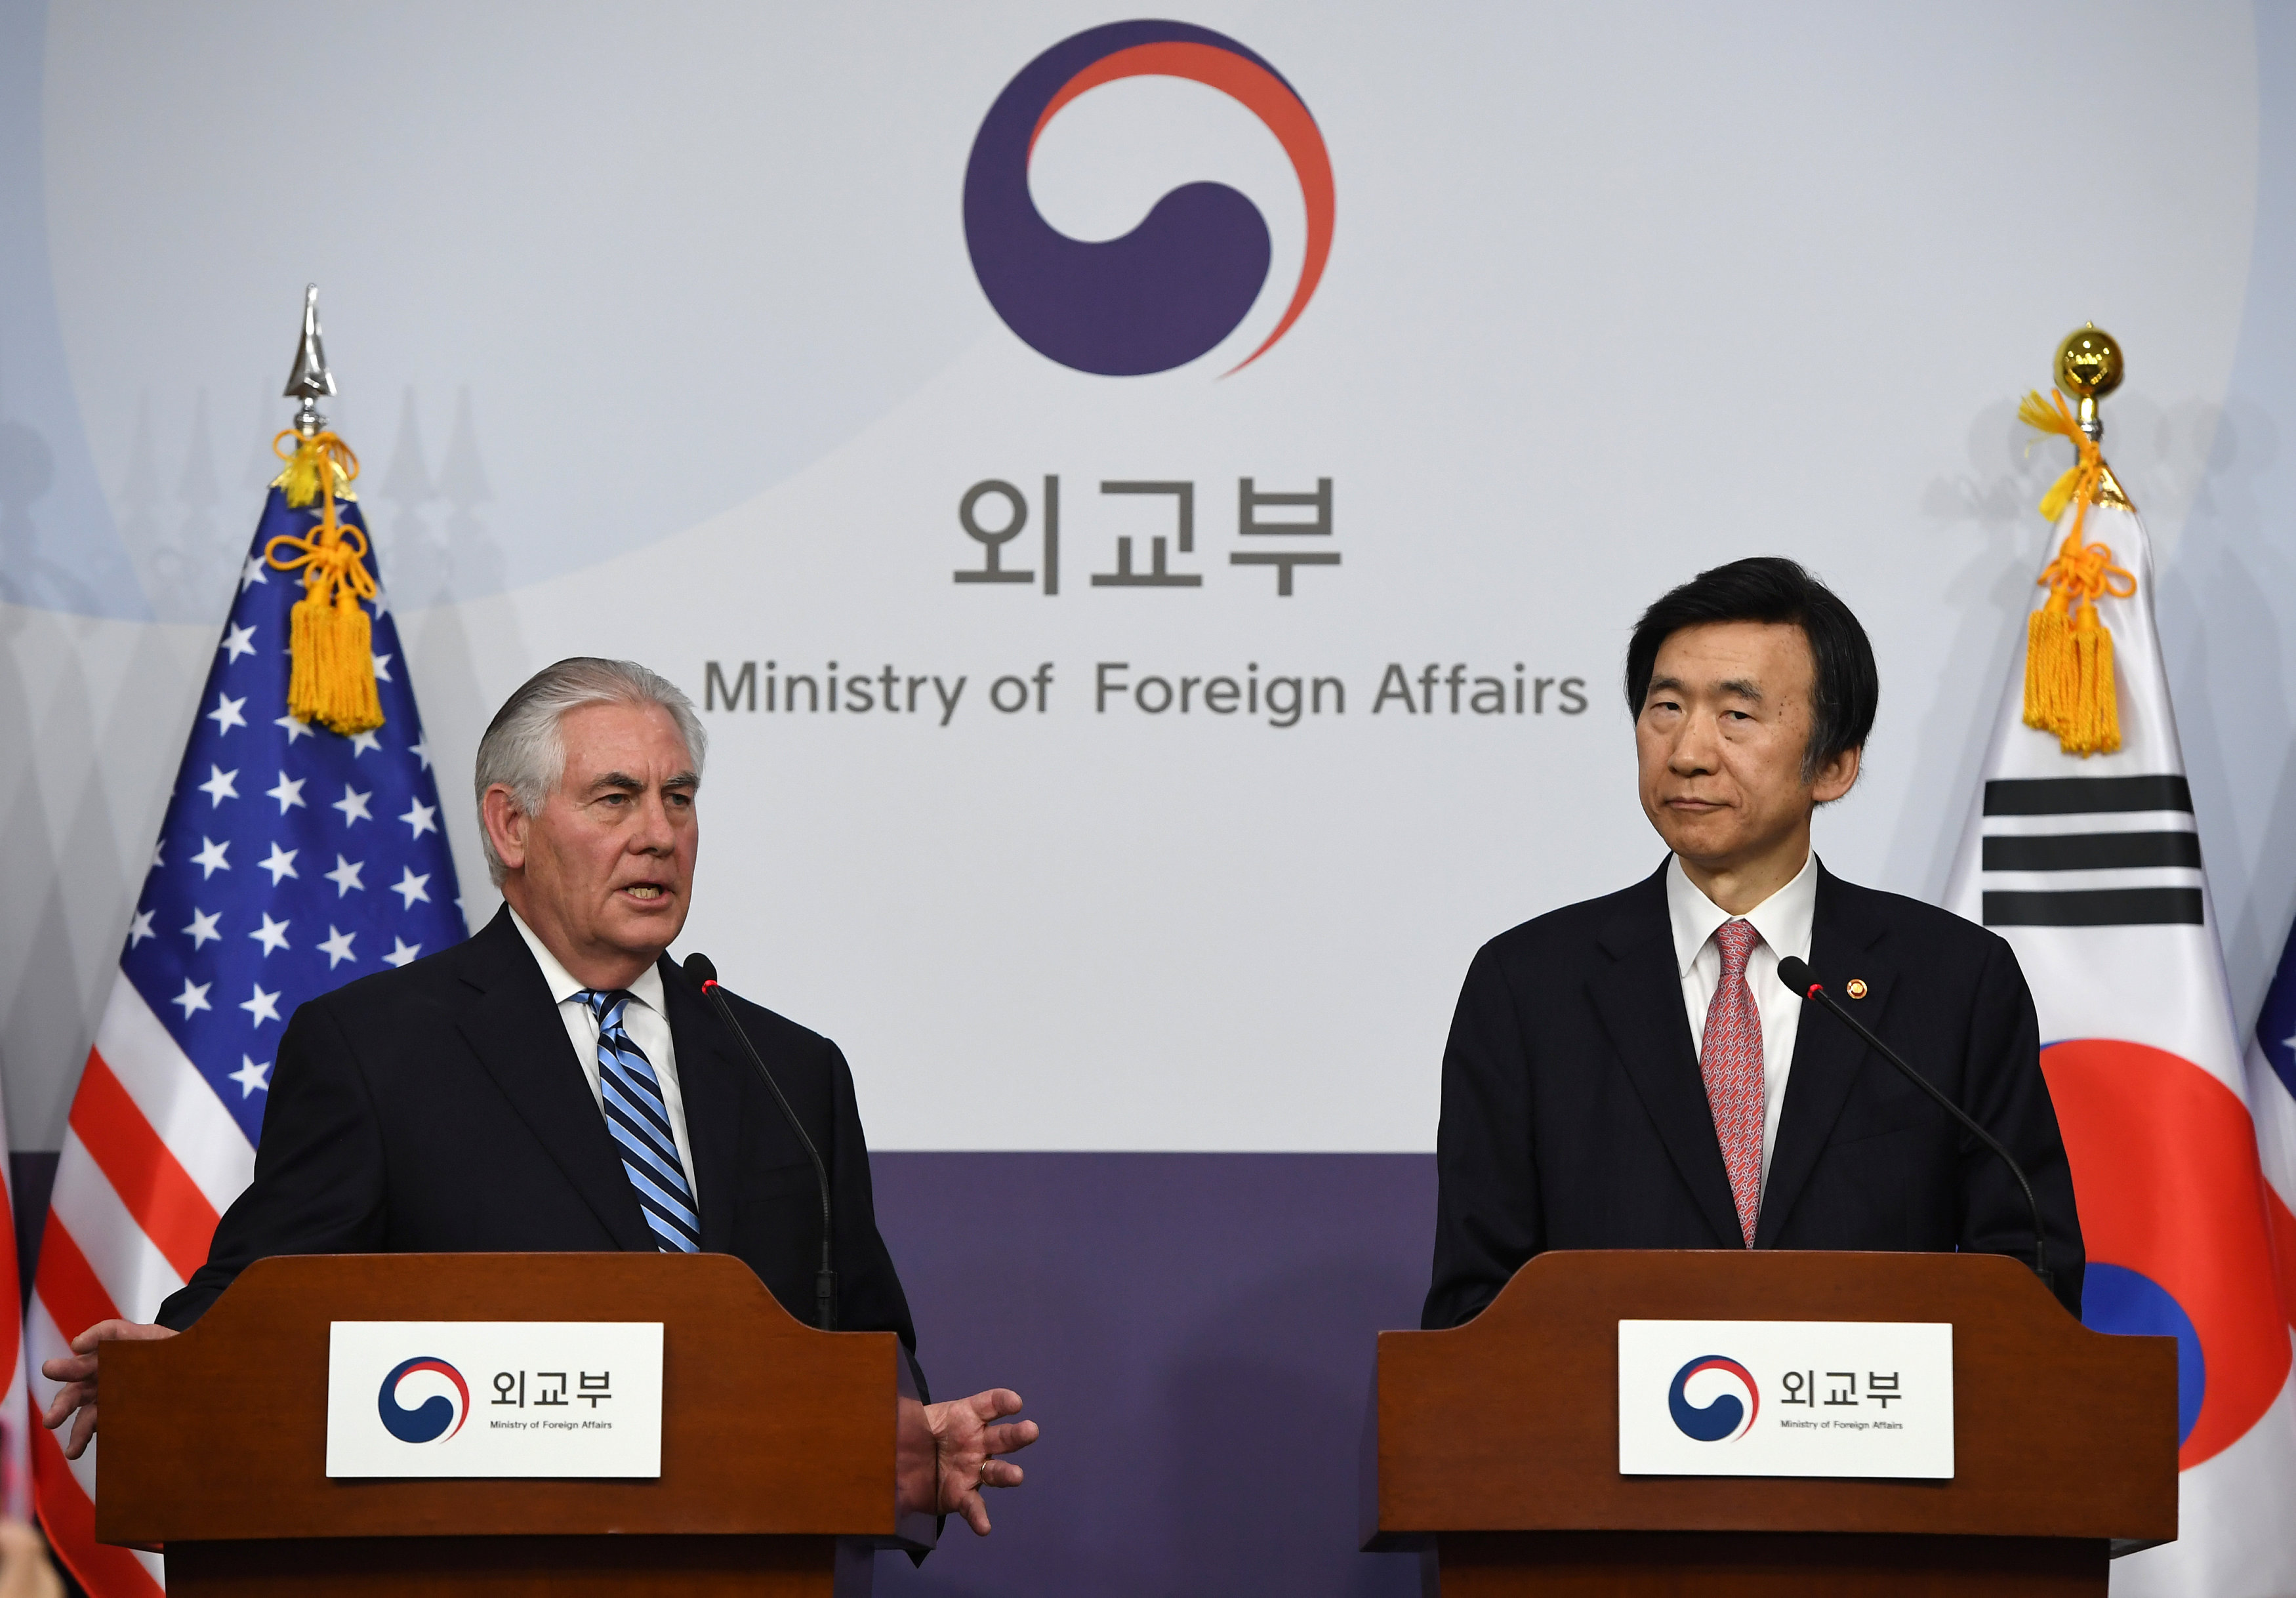 لقاء صحفى بين وزير الخارجية الأمريكى ونظيره الكورى الجنوبى